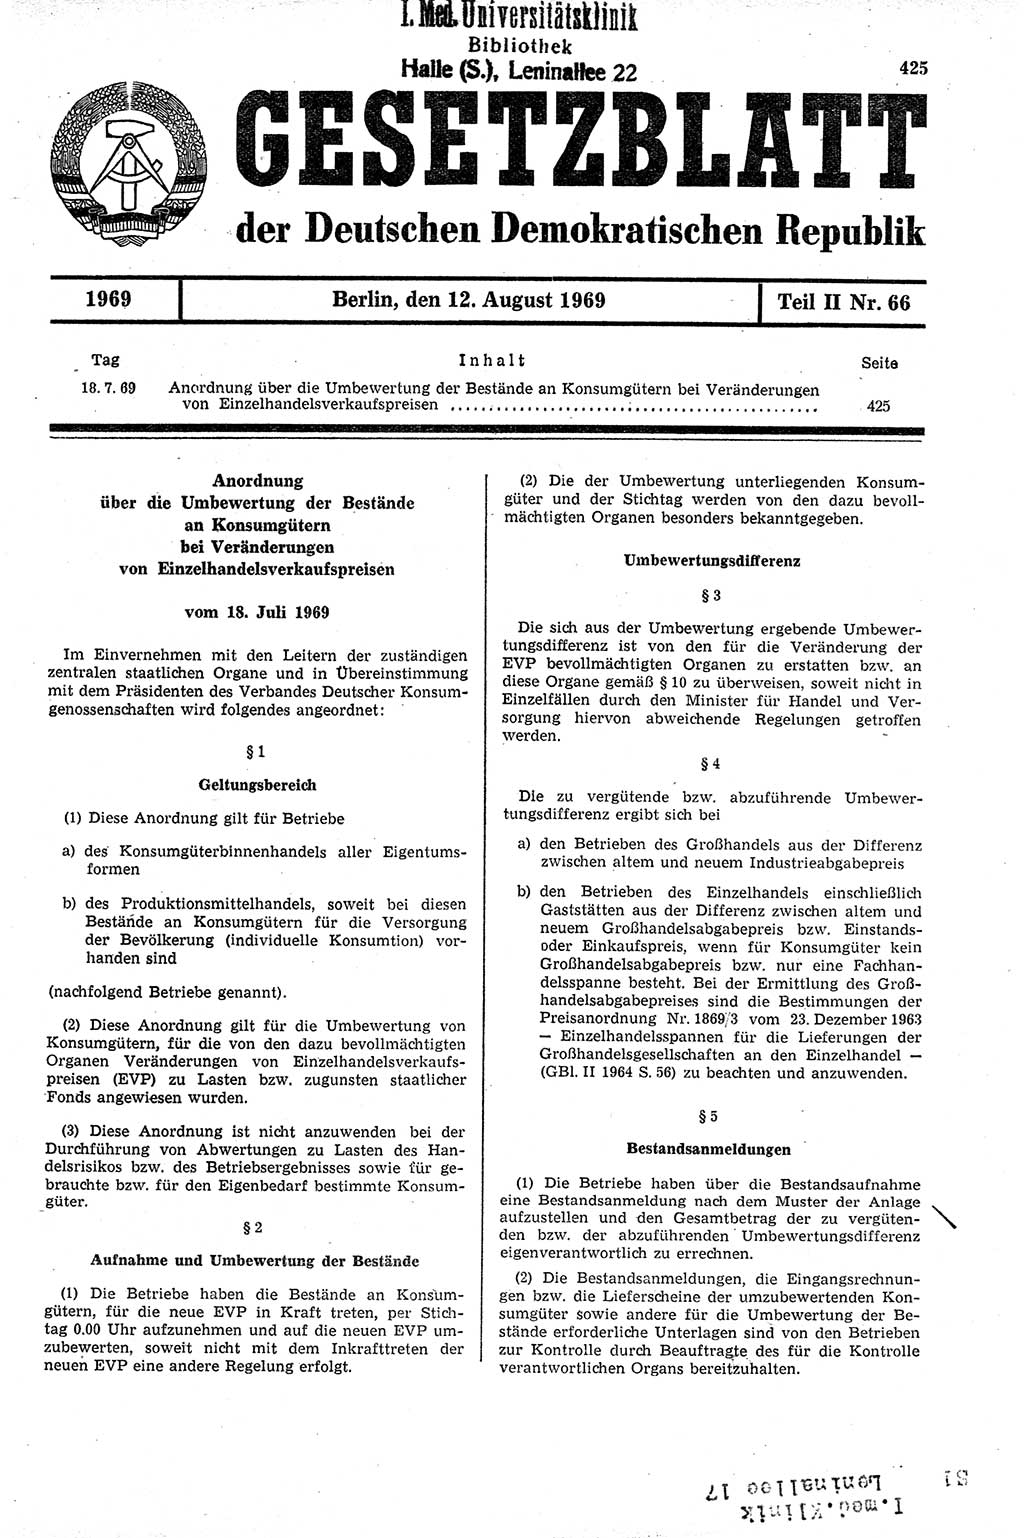 Gesetzblatt (GBl.) der Deutschen Demokratischen Republik (DDR) Teil ⅠⅠ 1969, Seite 425 (GBl. DDR ⅠⅠ 1969, S. 425)